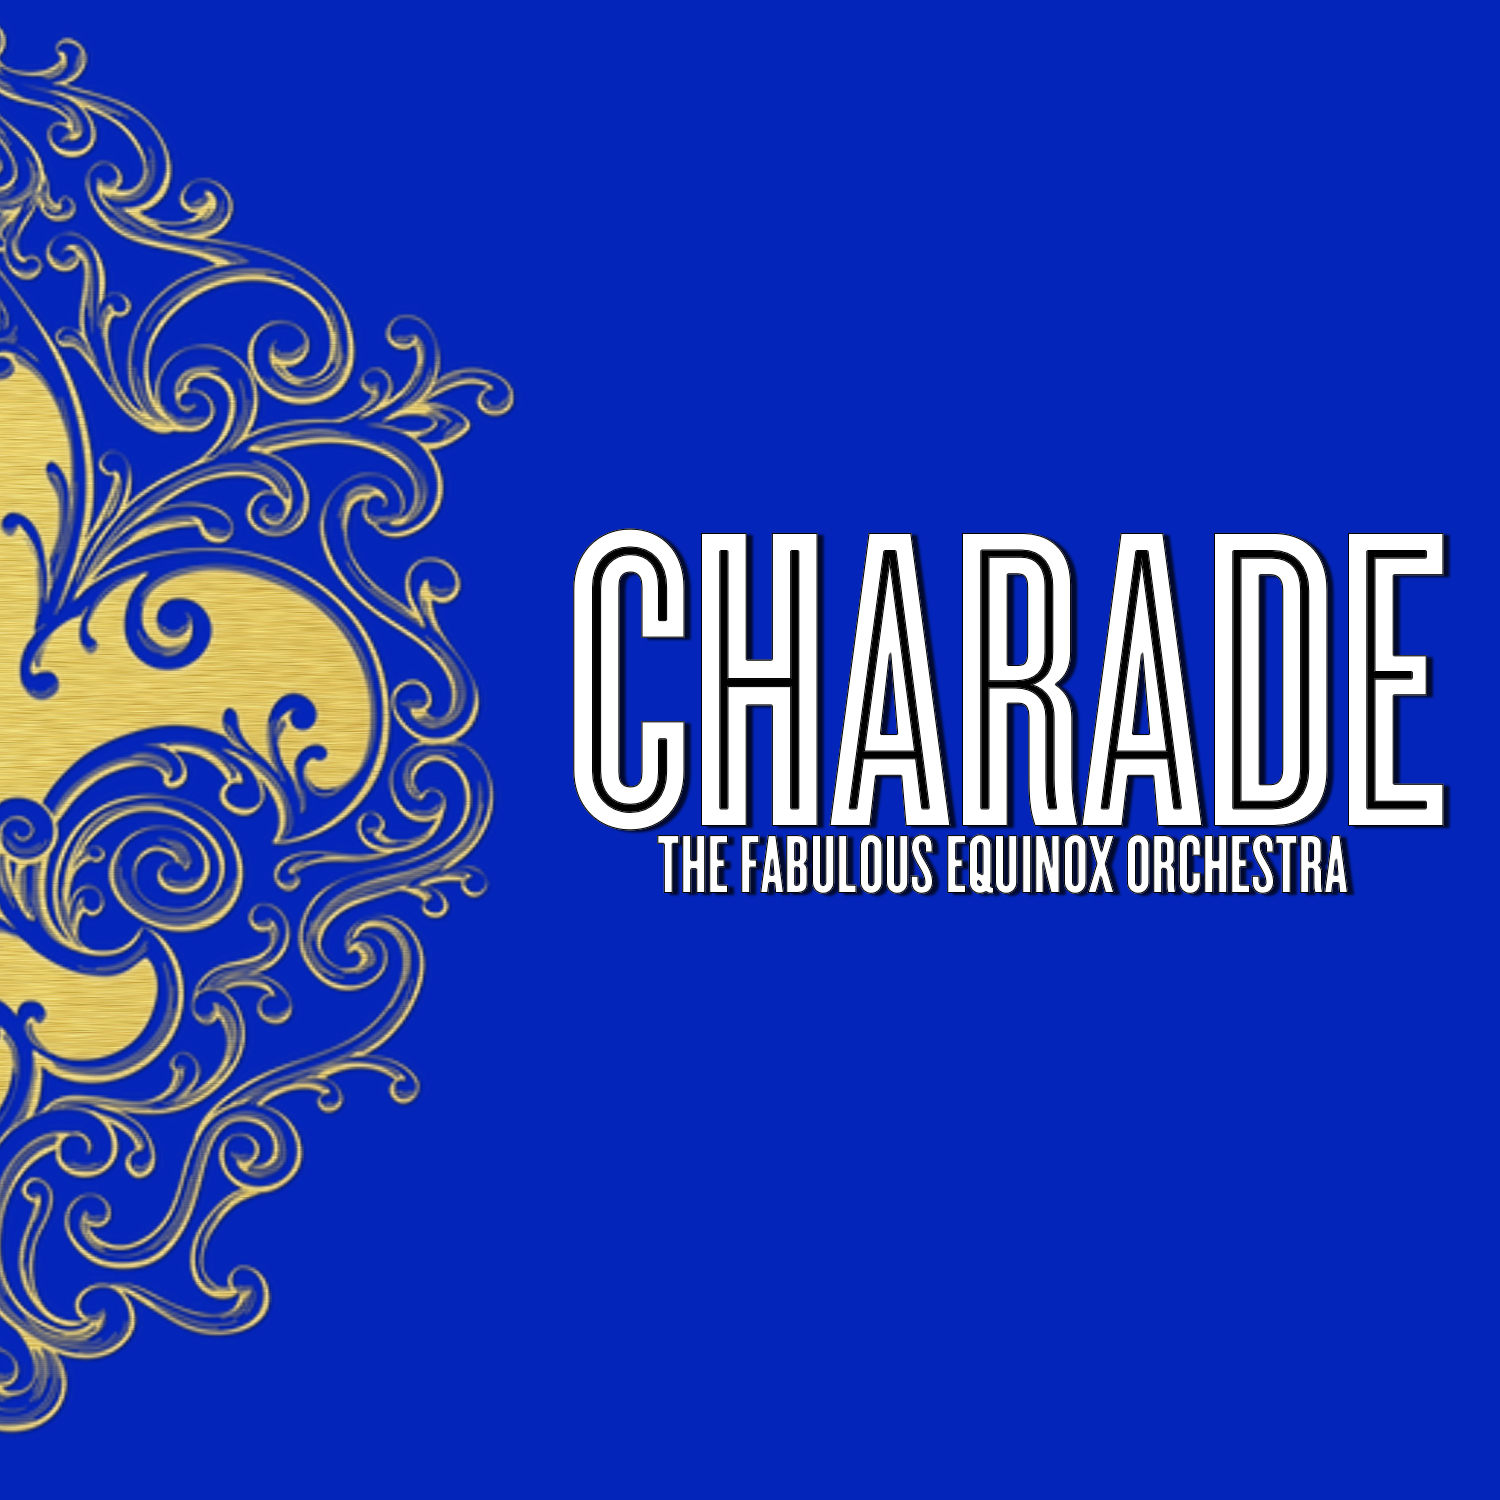 CD - Charade